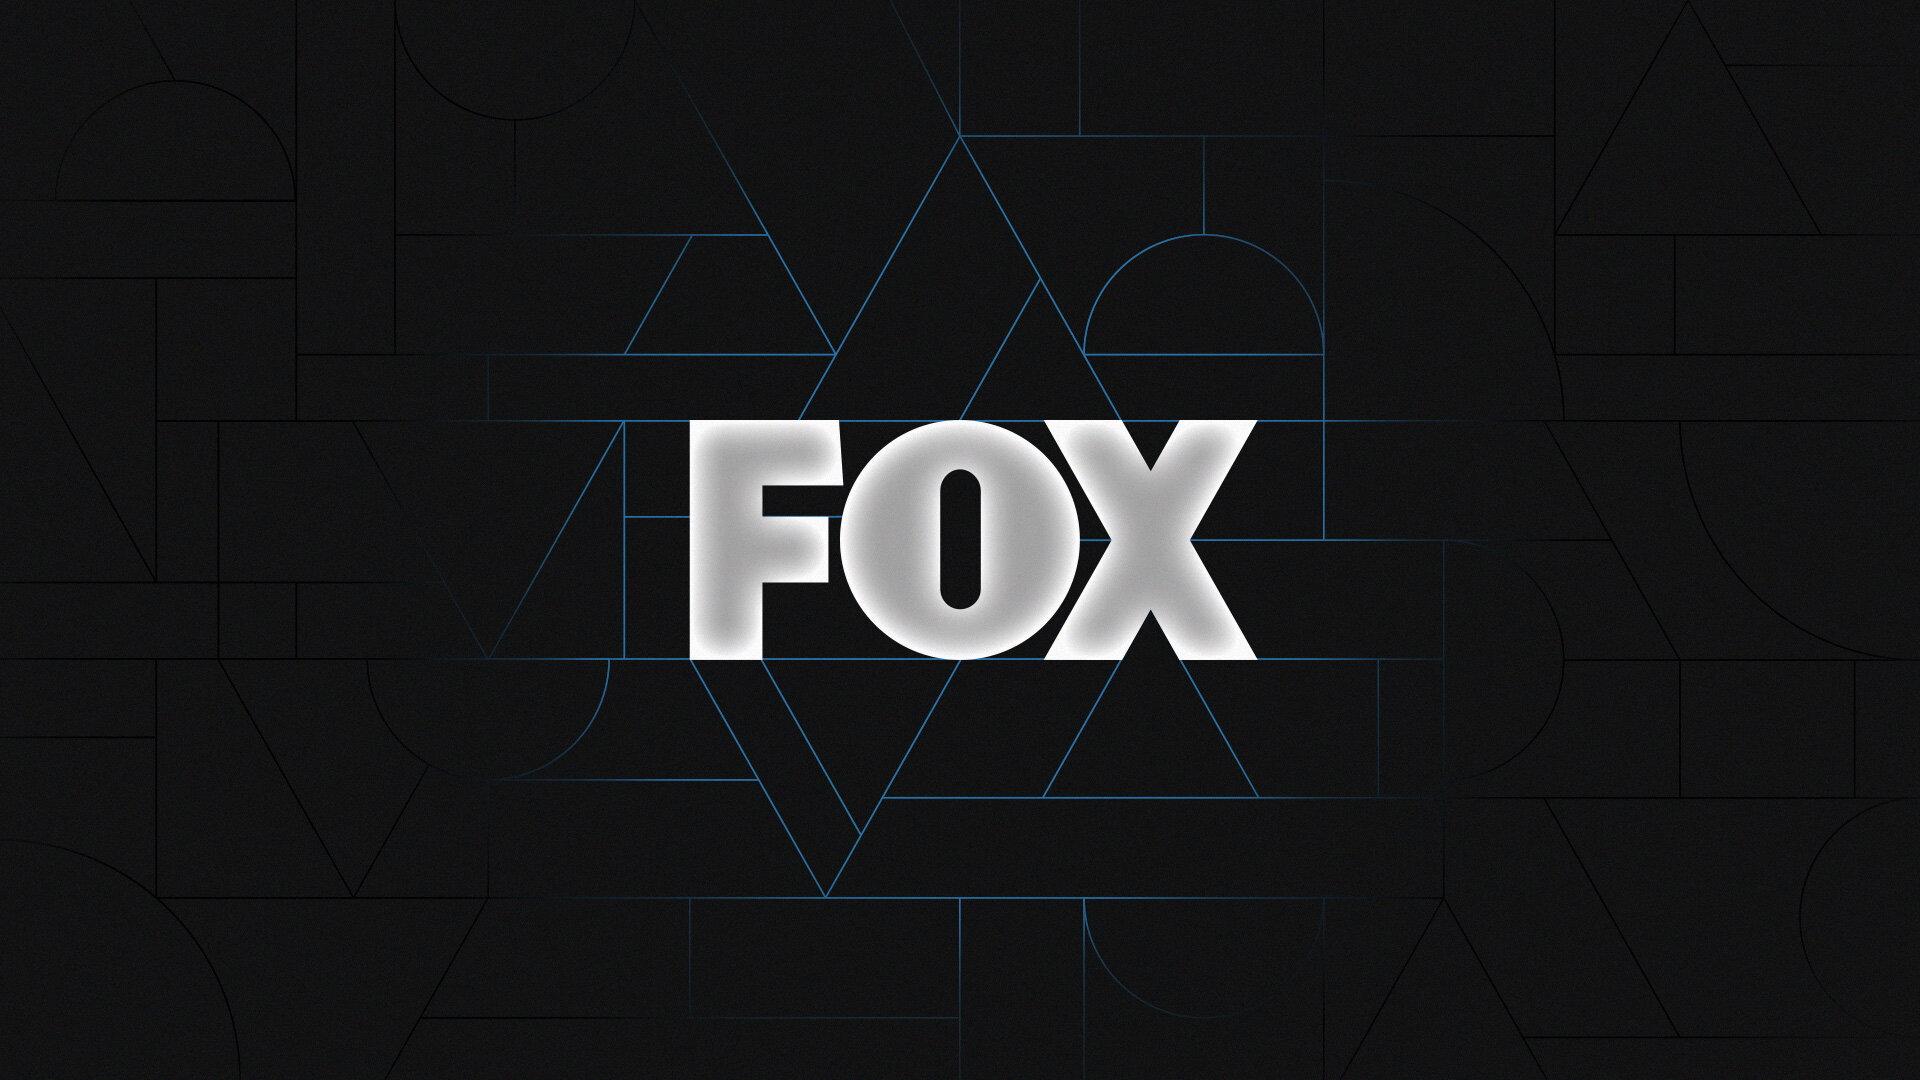 FOX_On-Air_Design_02_Adam-Wentworth_Graphic-Design.jpg